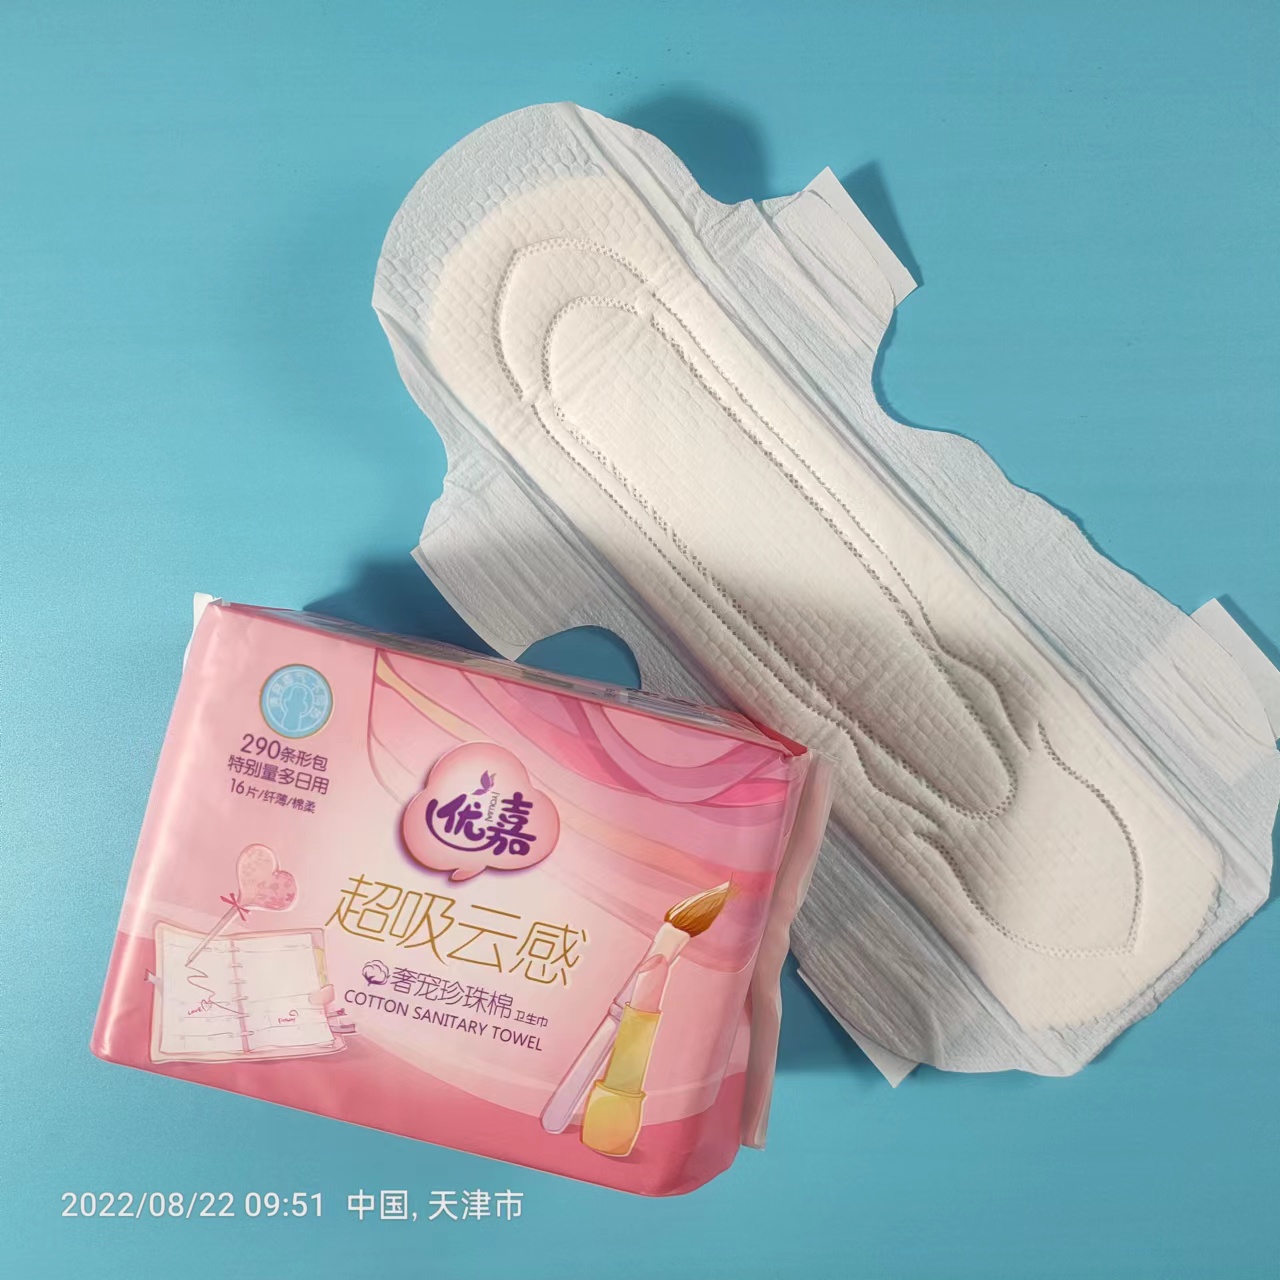 Hotsale atacado absorventes higiênicos femininos marca OEM toalha sanitária econômica super absorção absorvente higiênico para meninas